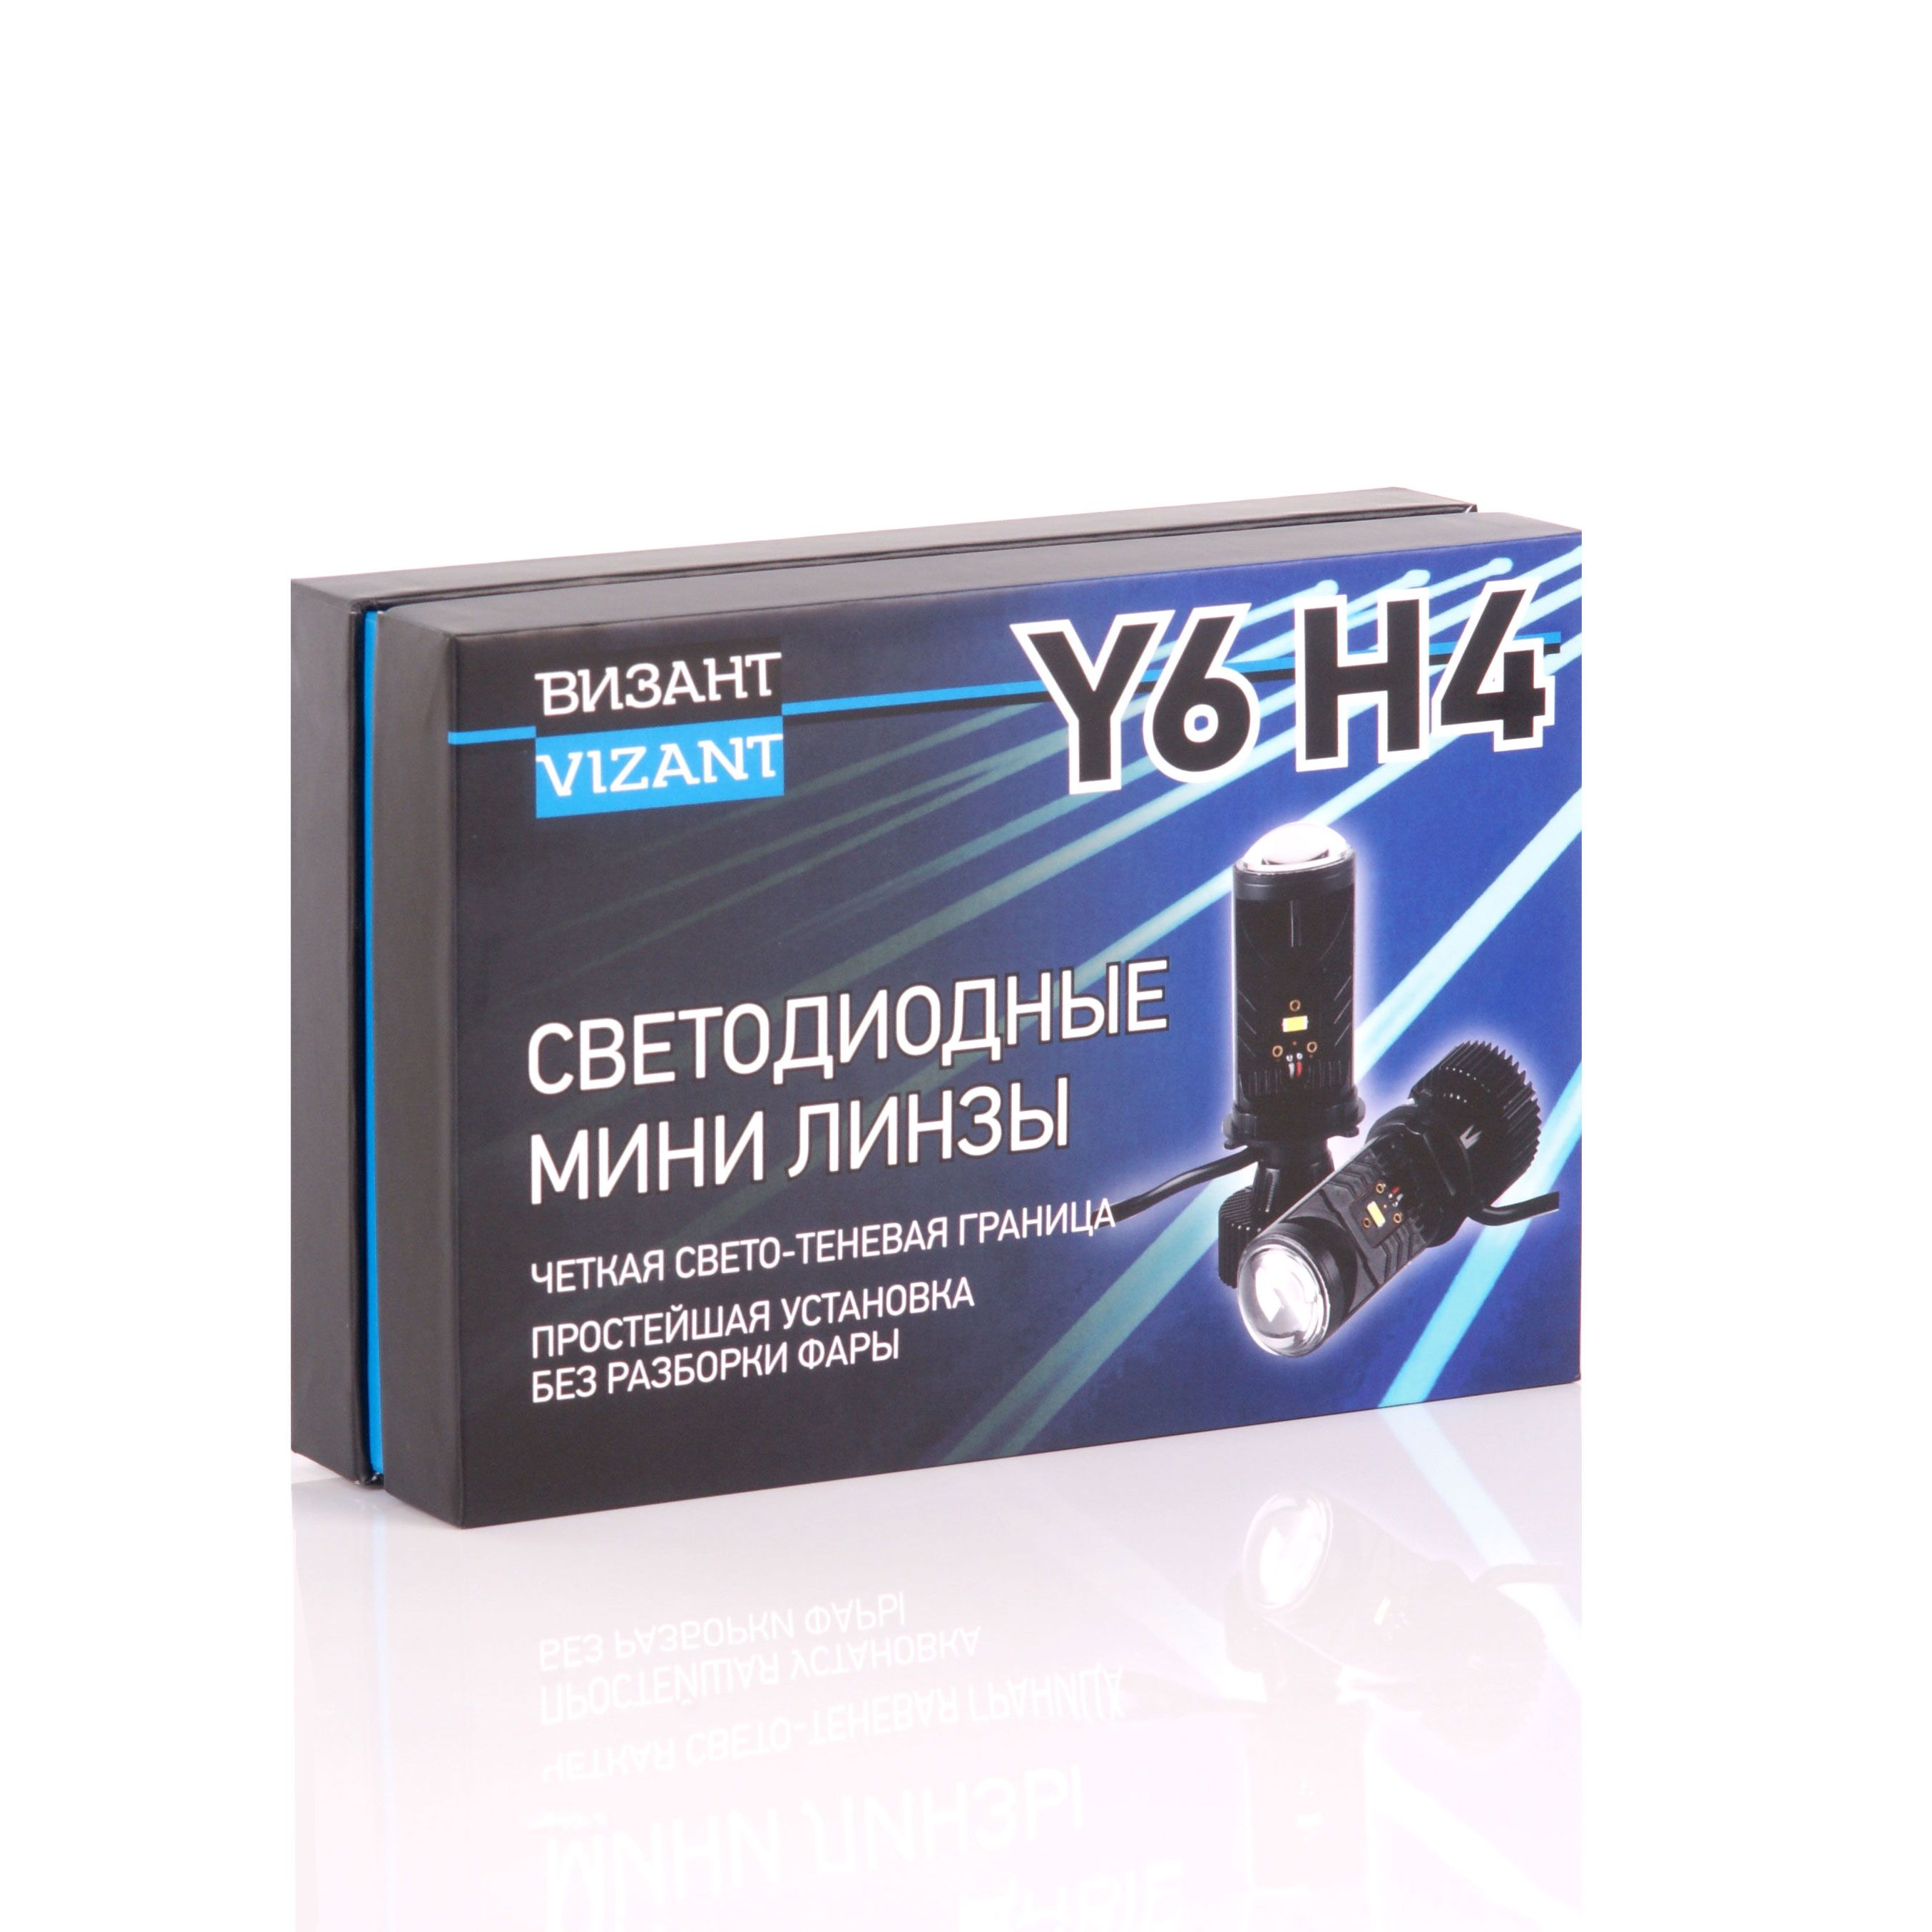    Vizant Y6  H4   G-XPx3 6000lm 5000k   